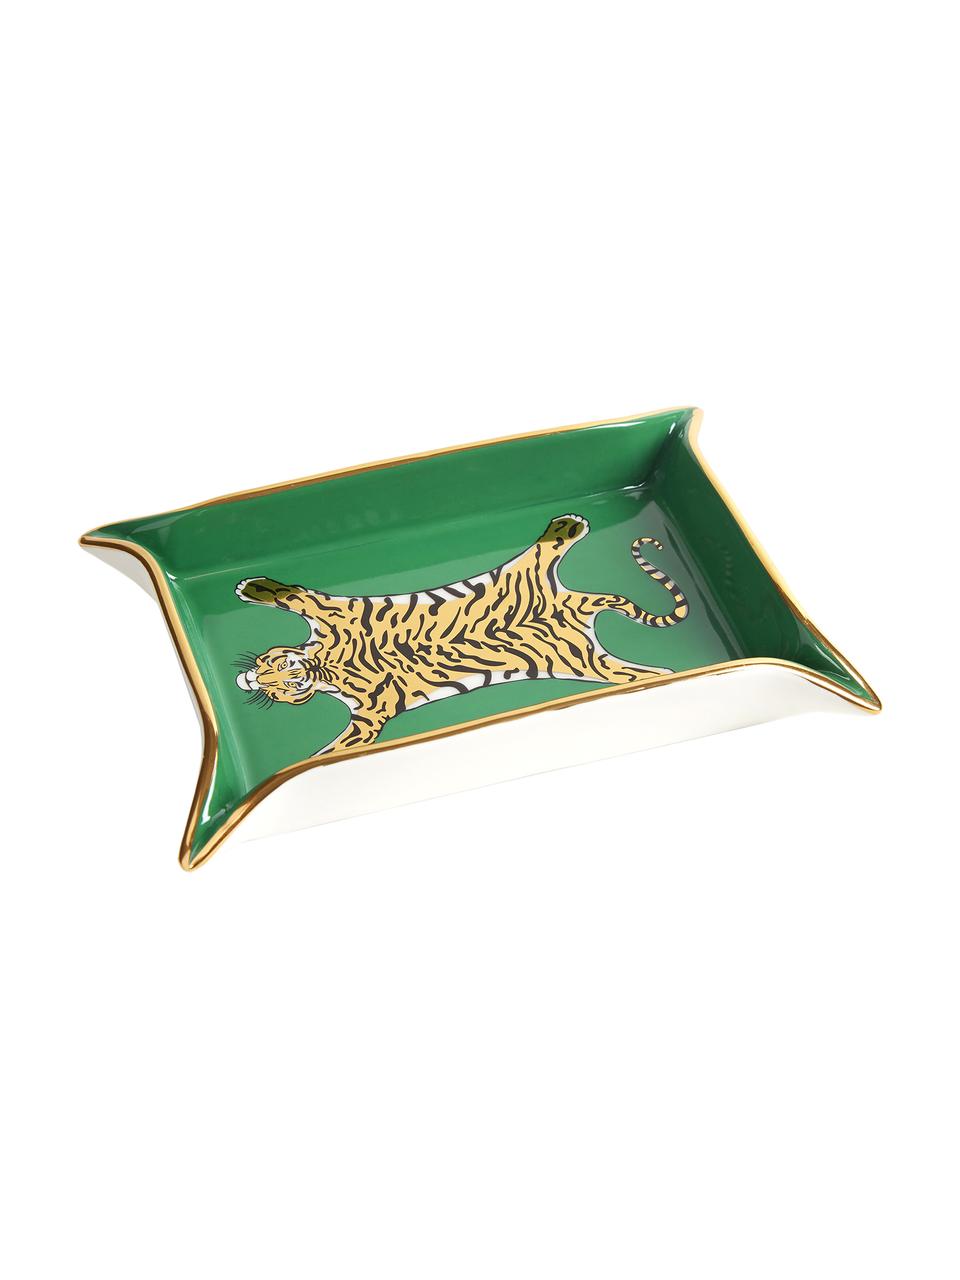 Designová mísa Tiger, Porcelán, pozlacené prvky, Vnitřní strana: zelená, zlatá, odstíny béžové Vnější strana: bílá, Š 18 cm, H 13 cm